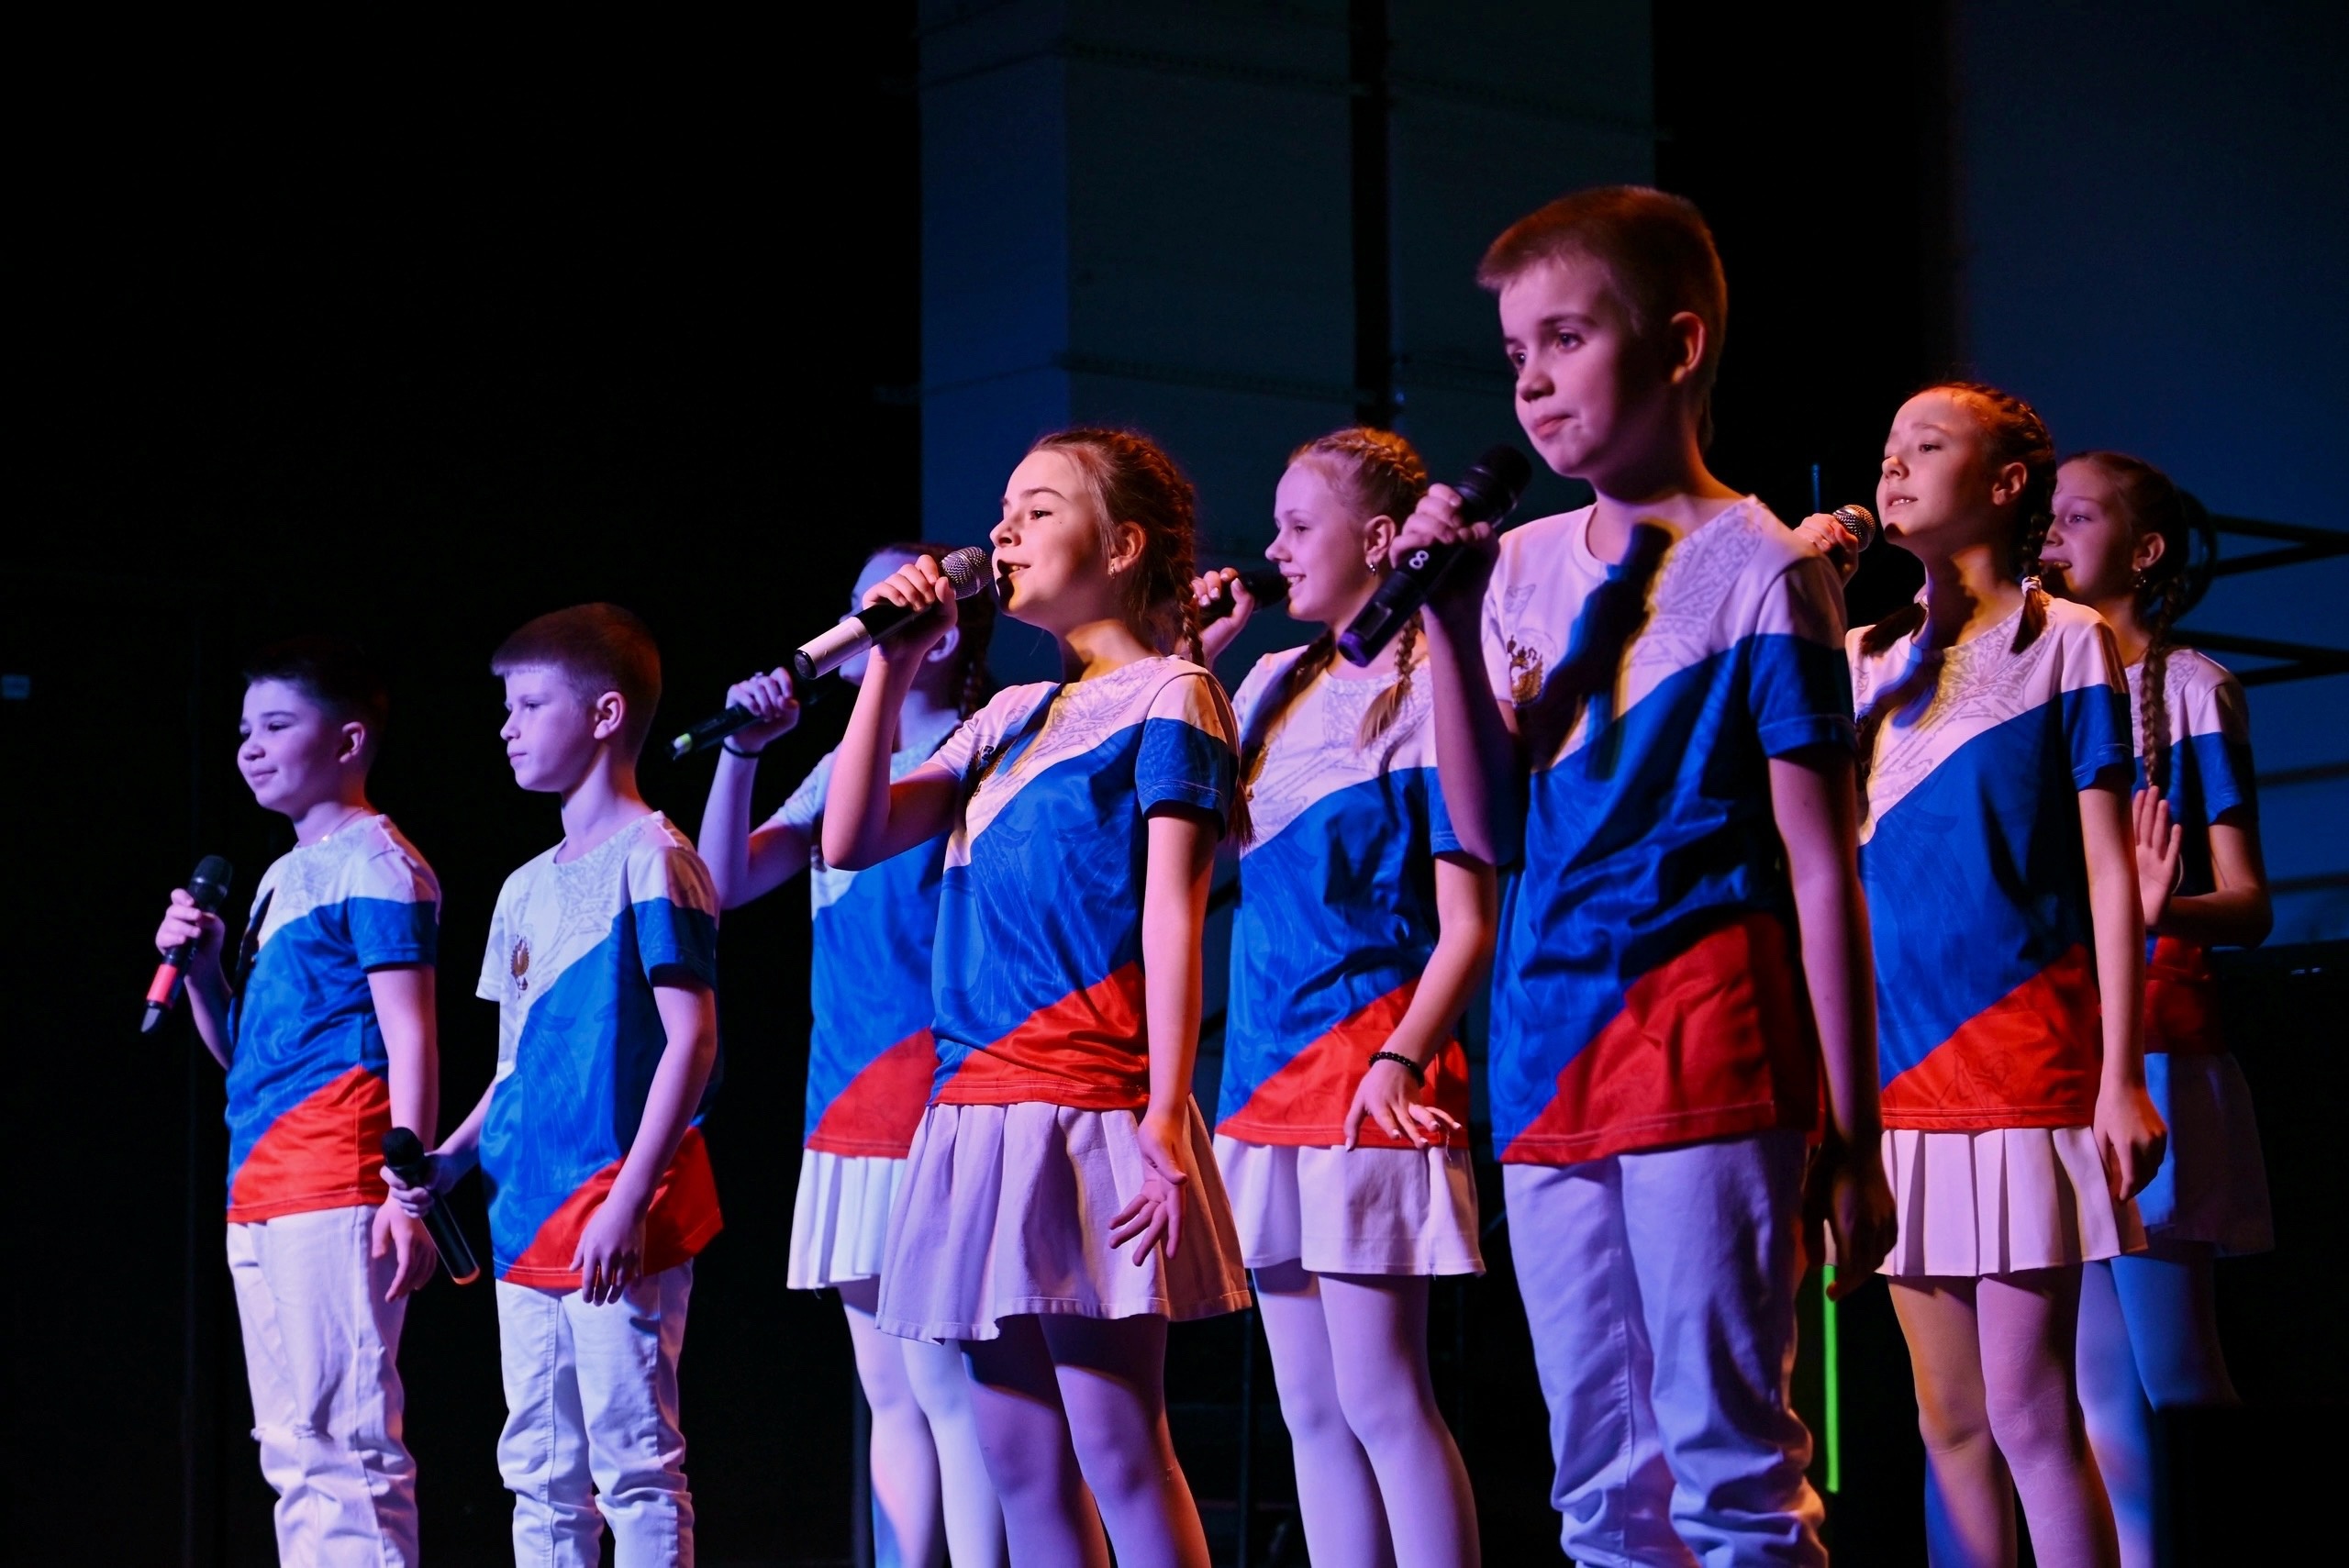 Ивановцам показали концертную программу «Россия - это мы!».